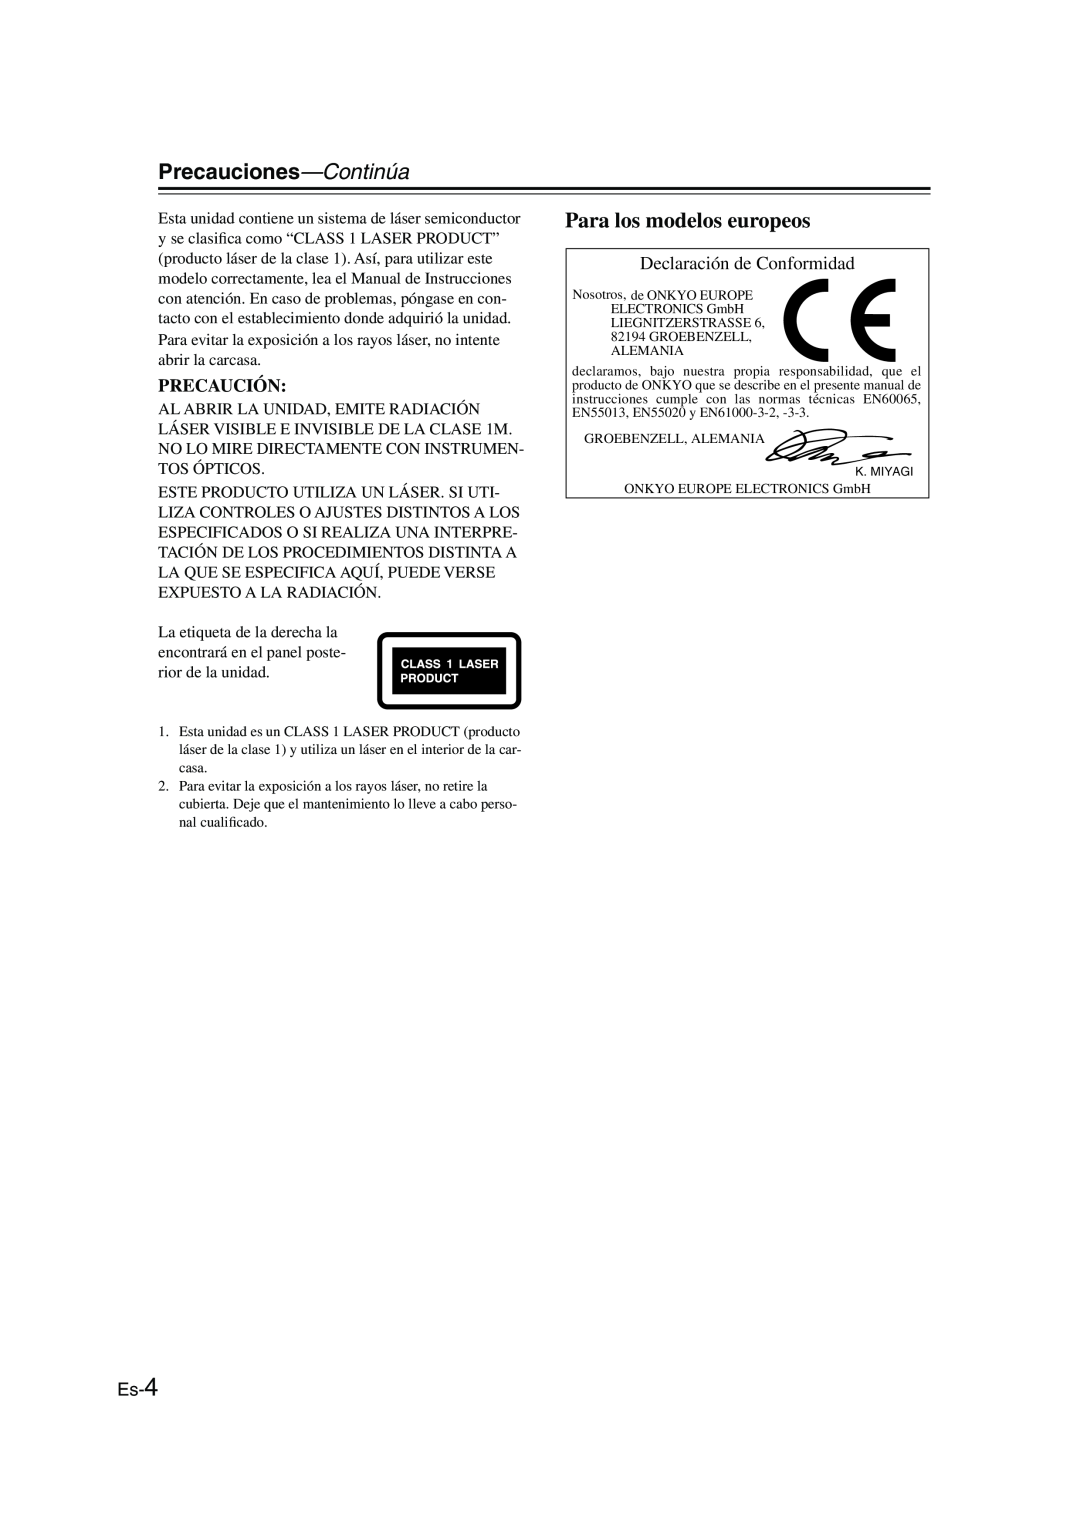 Onkyo CBX-300 Precauciones—Continúa, Para los modelos europeos, Declaración de Conformidad, Precaución, Es-4 